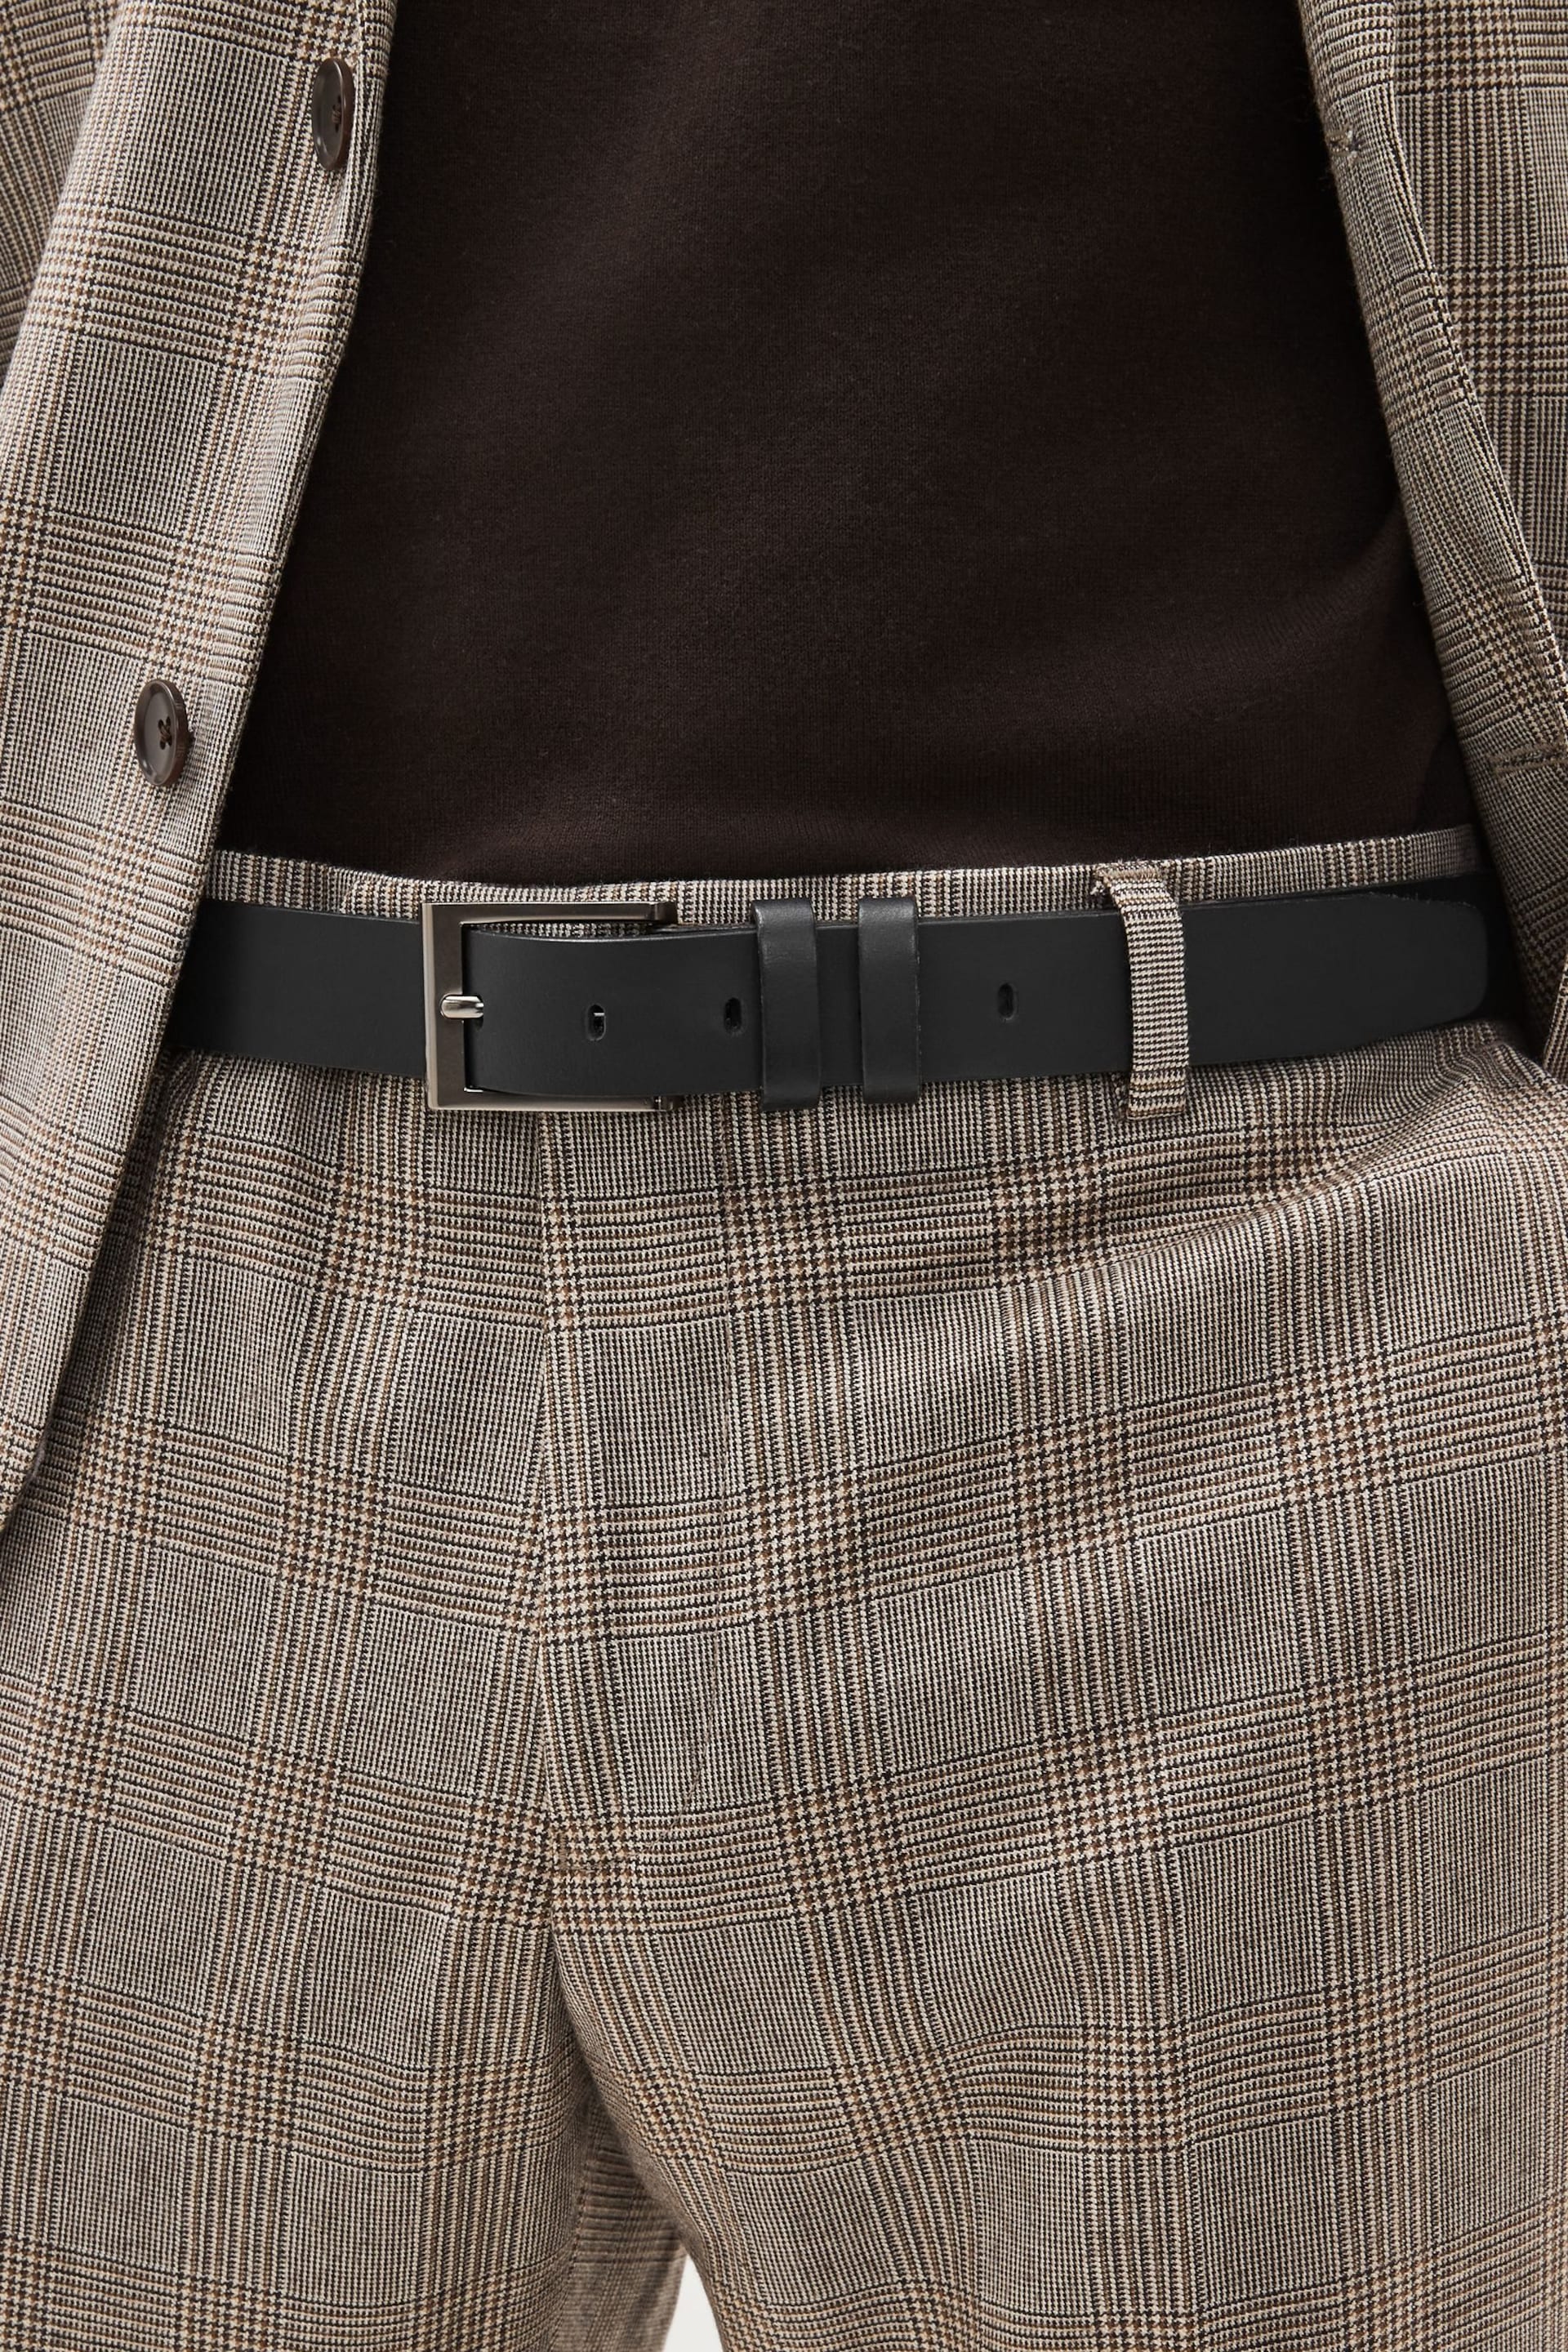 Black Leather Belt - Image 1 of 3